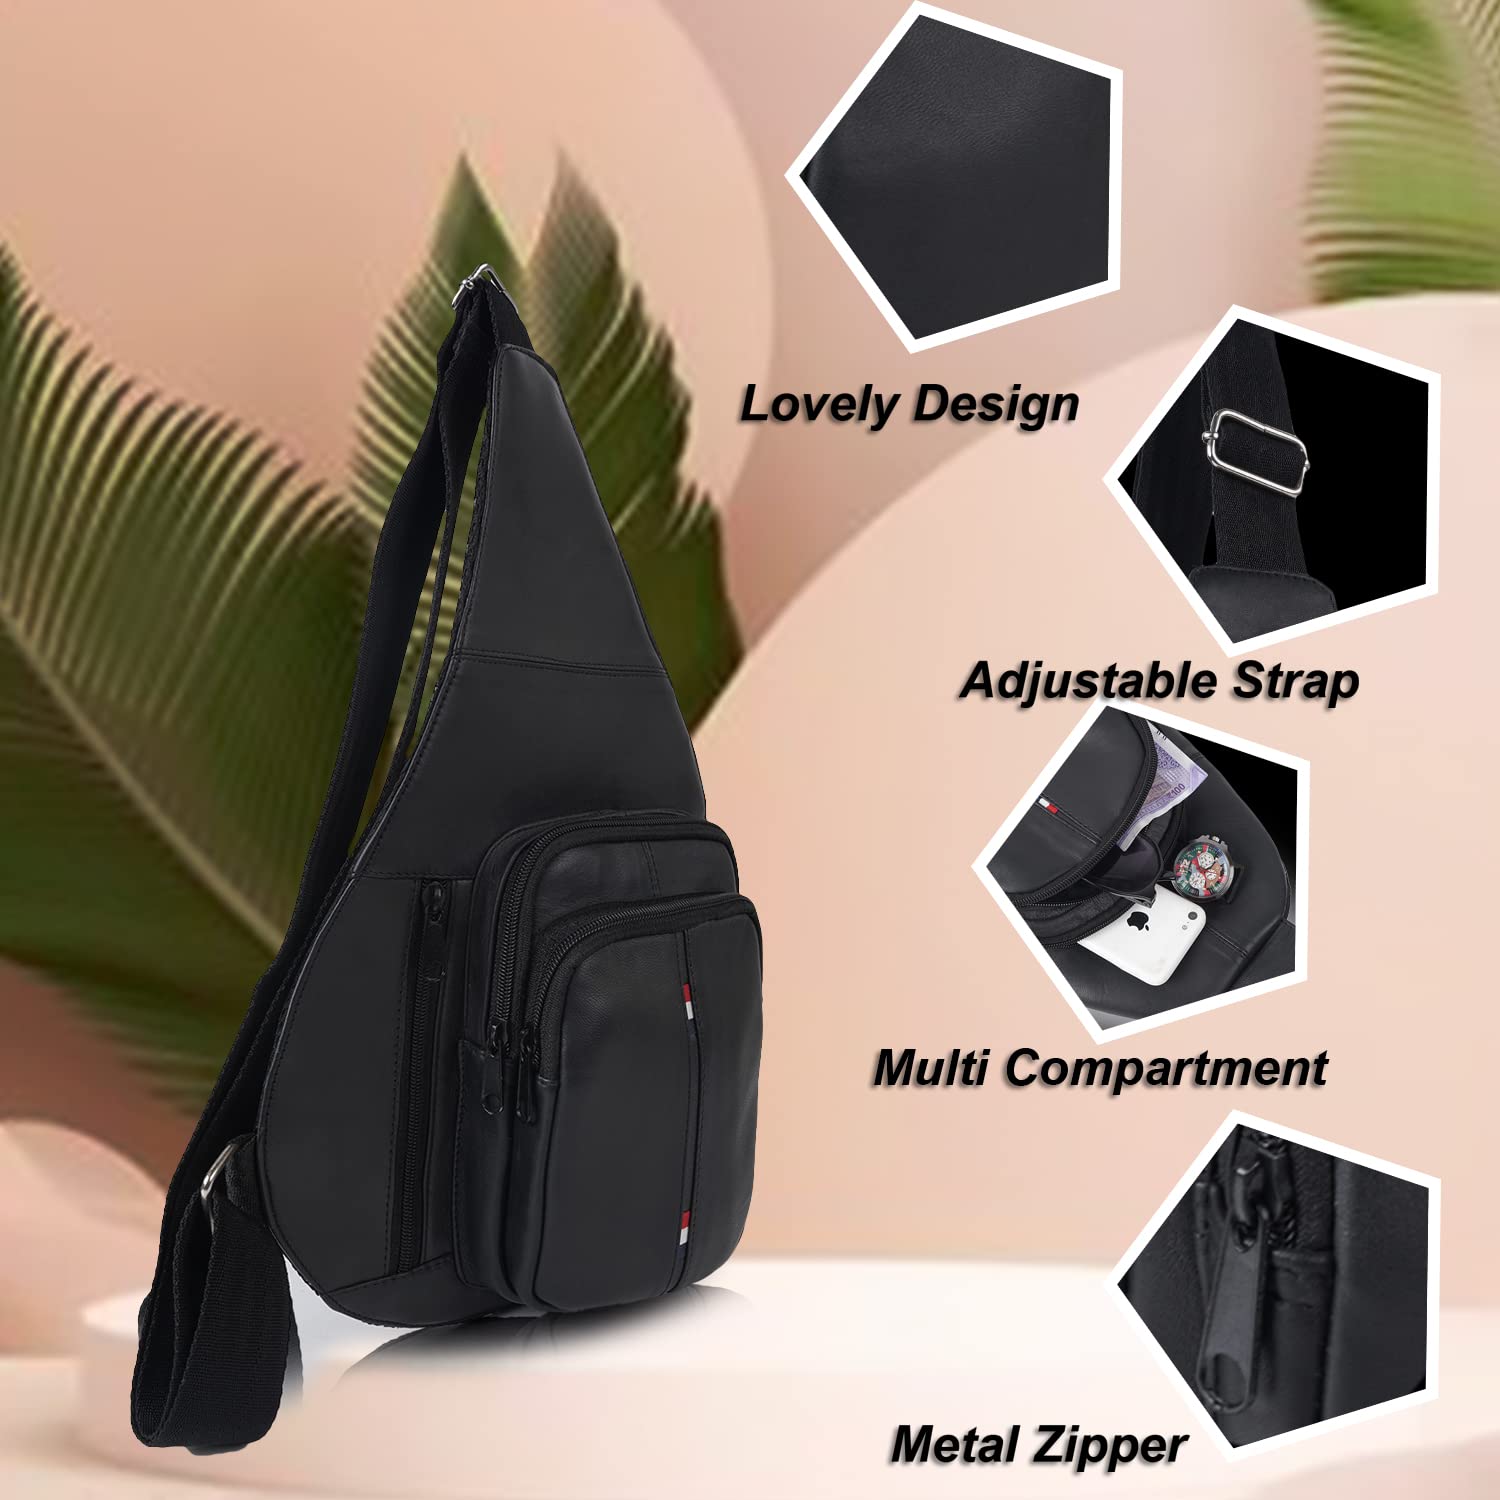 CIMONI Unisex Black Leather Structured Crossbody Bag